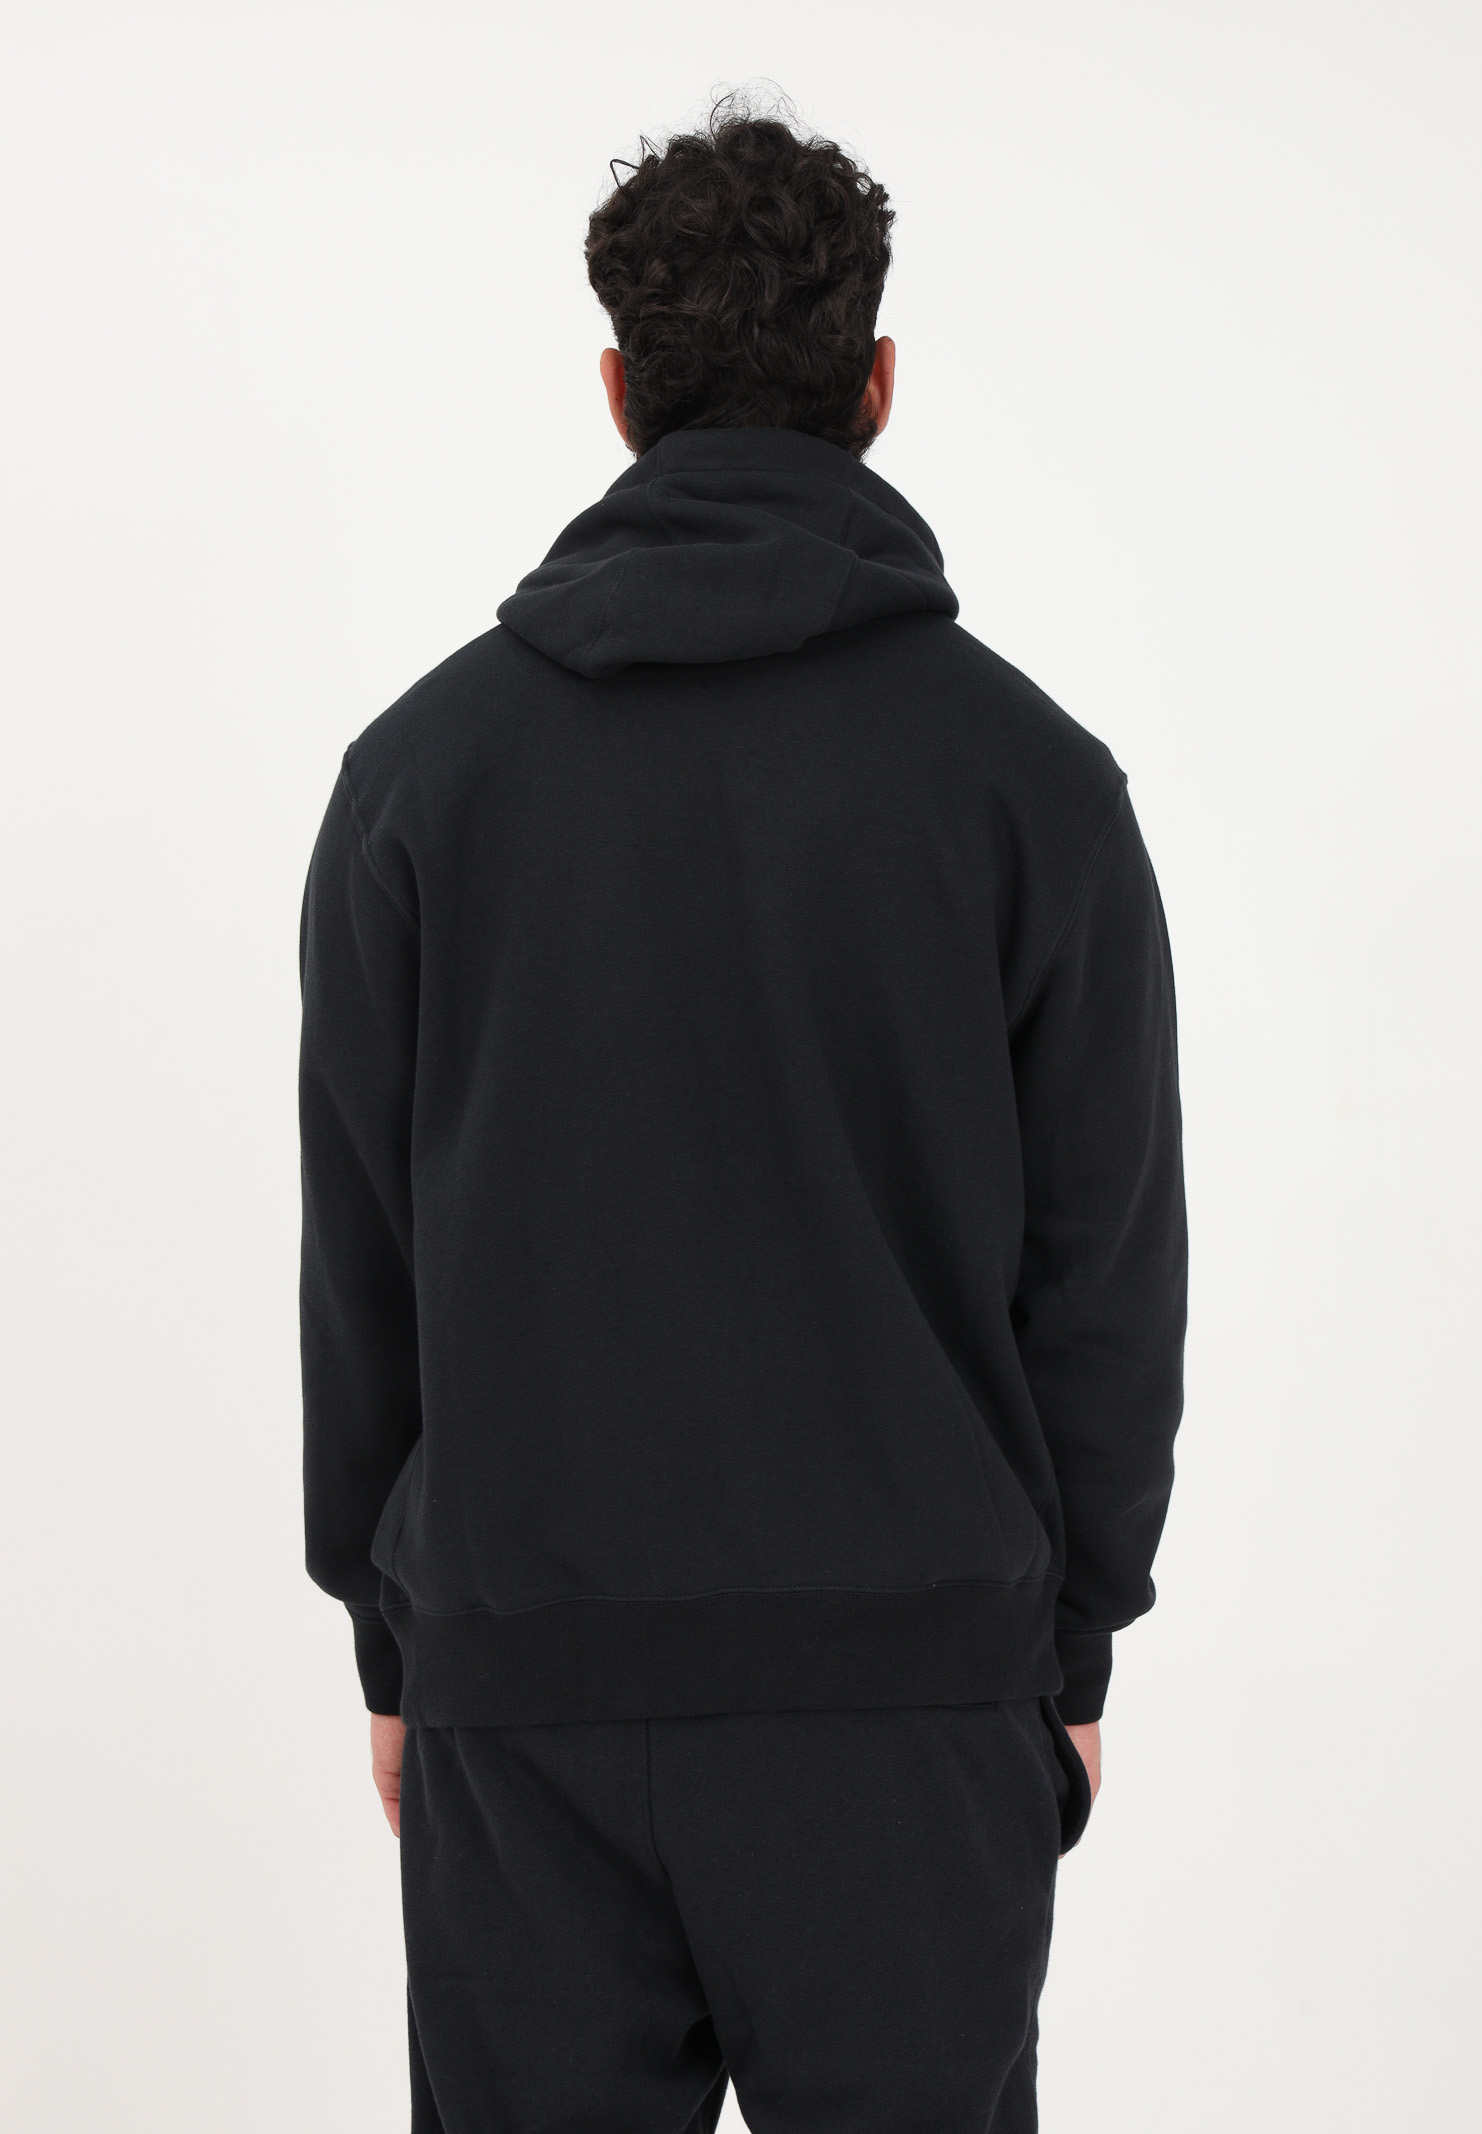 Nike Sportswear Club Fleece men's black zip-up sweatshirt NIKE | BV2645010